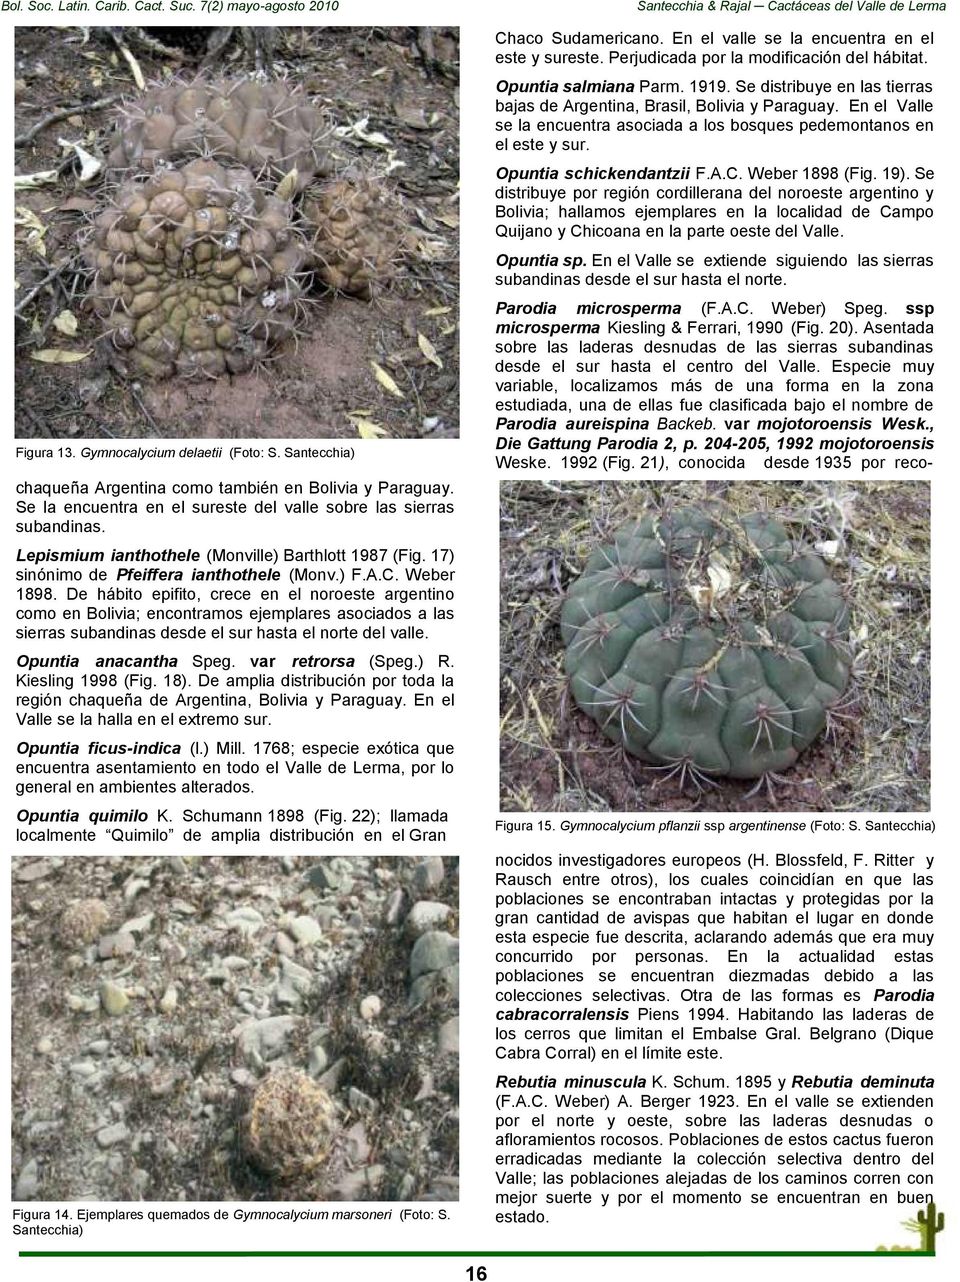 De hábito epifito, crece en el noroeste argentino como en Bolivia; encontramos ejemplares asociados a las sierras subandinas desde el sur hasta el norte del valle. Opuntia anacantha Speg.